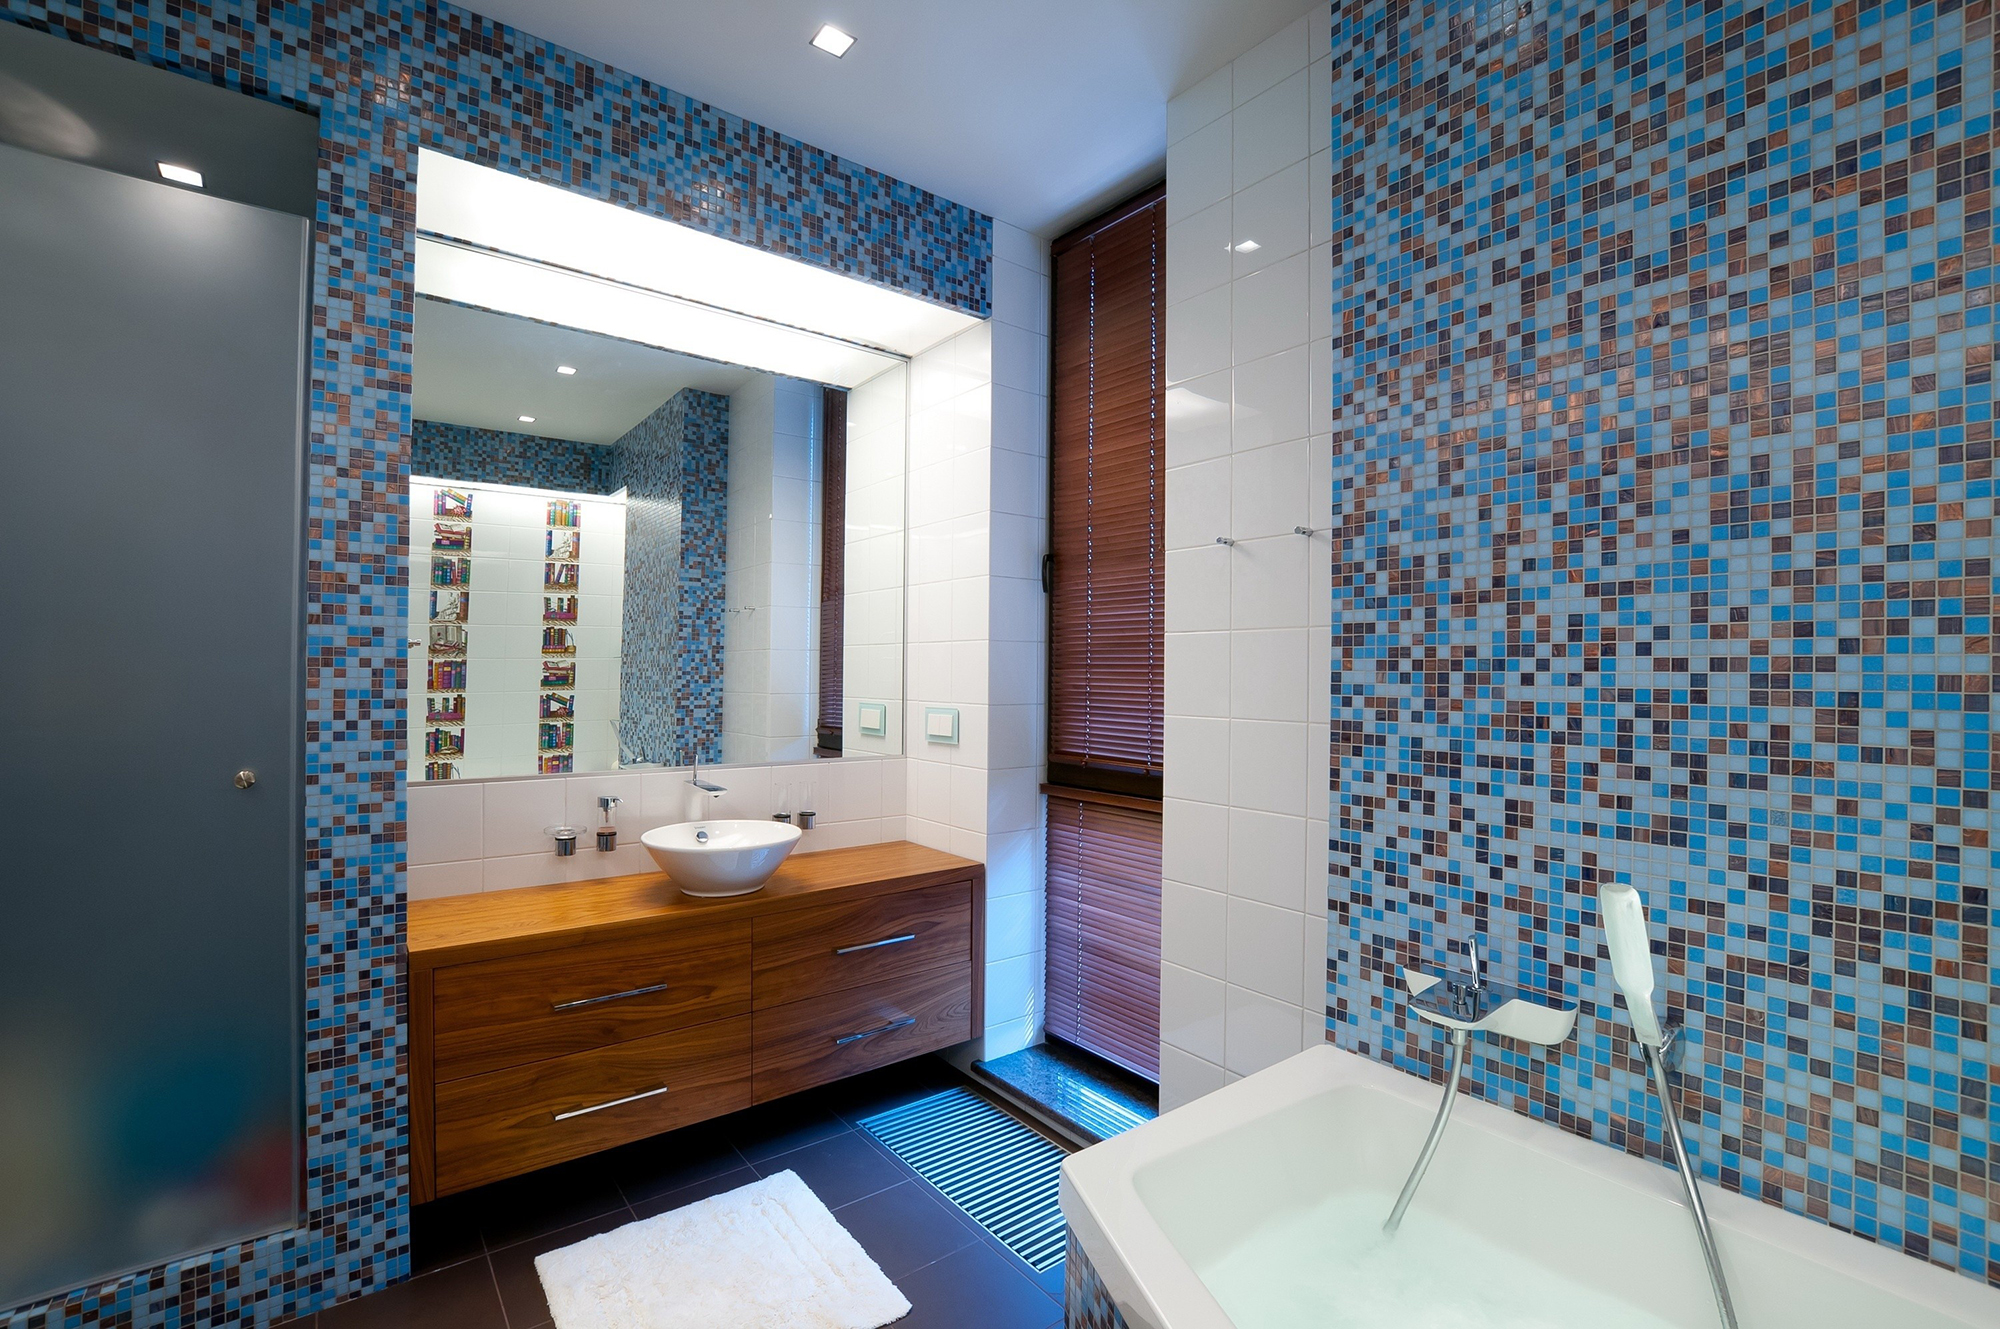 Мозаика в синих тонах в ванной